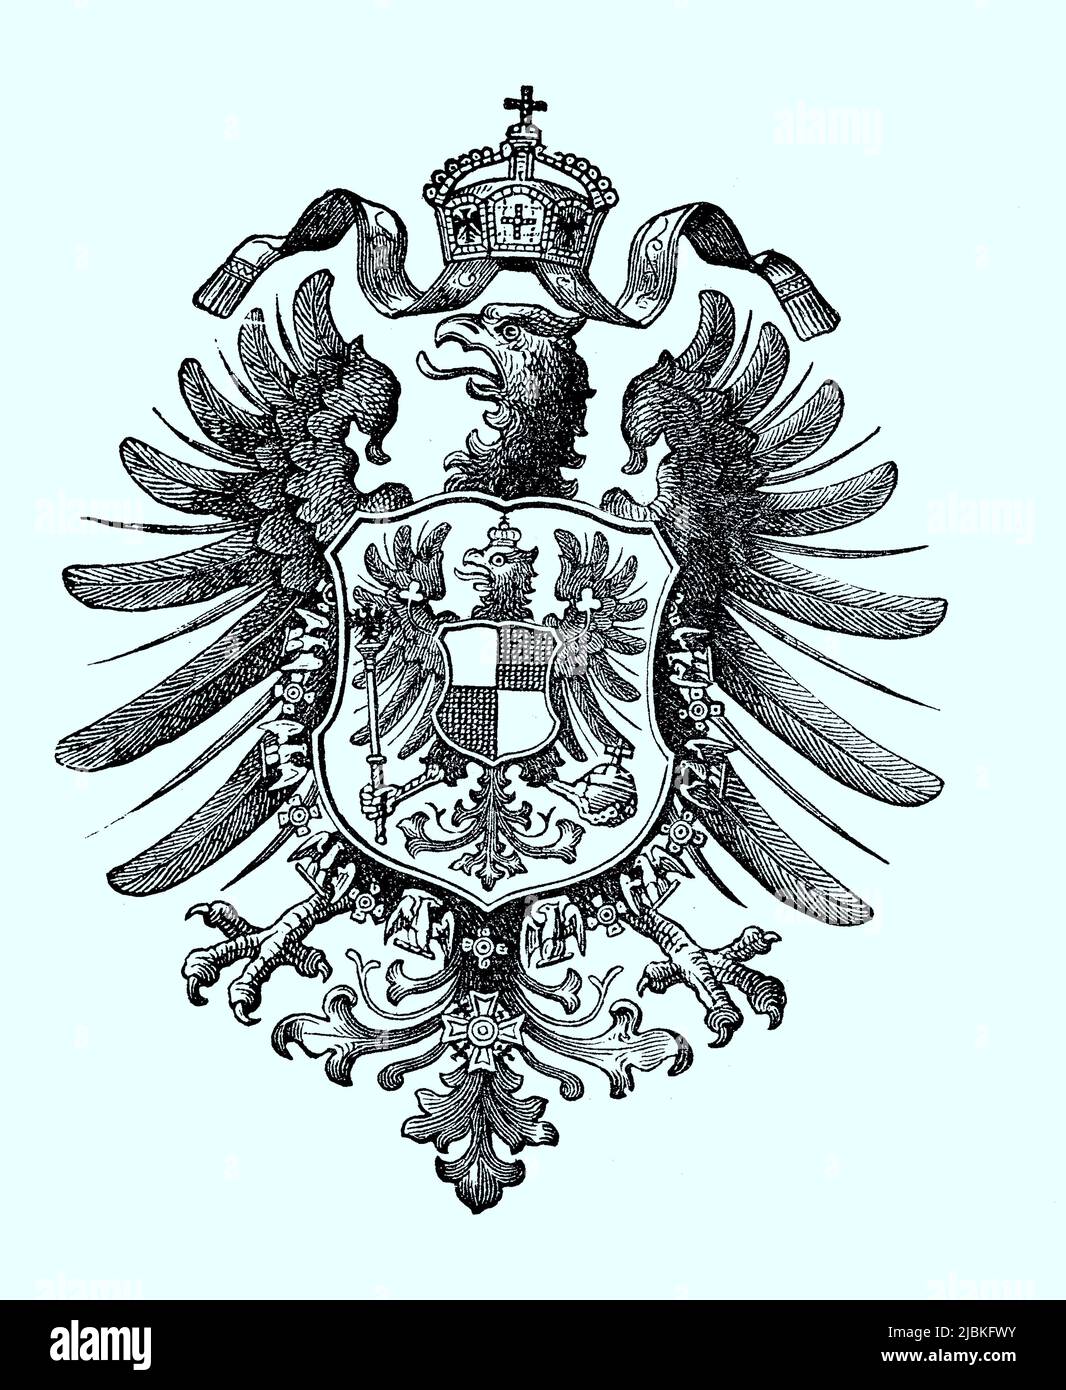 Staatswappen, Wappen aus dem Jahre 1890, Deutsches Reich, digital restaurierte Reproduktion einer Originalvorlage aus dem 19. Jahrhundert, genaues Originaldatum nicht bekannt Stock Photo